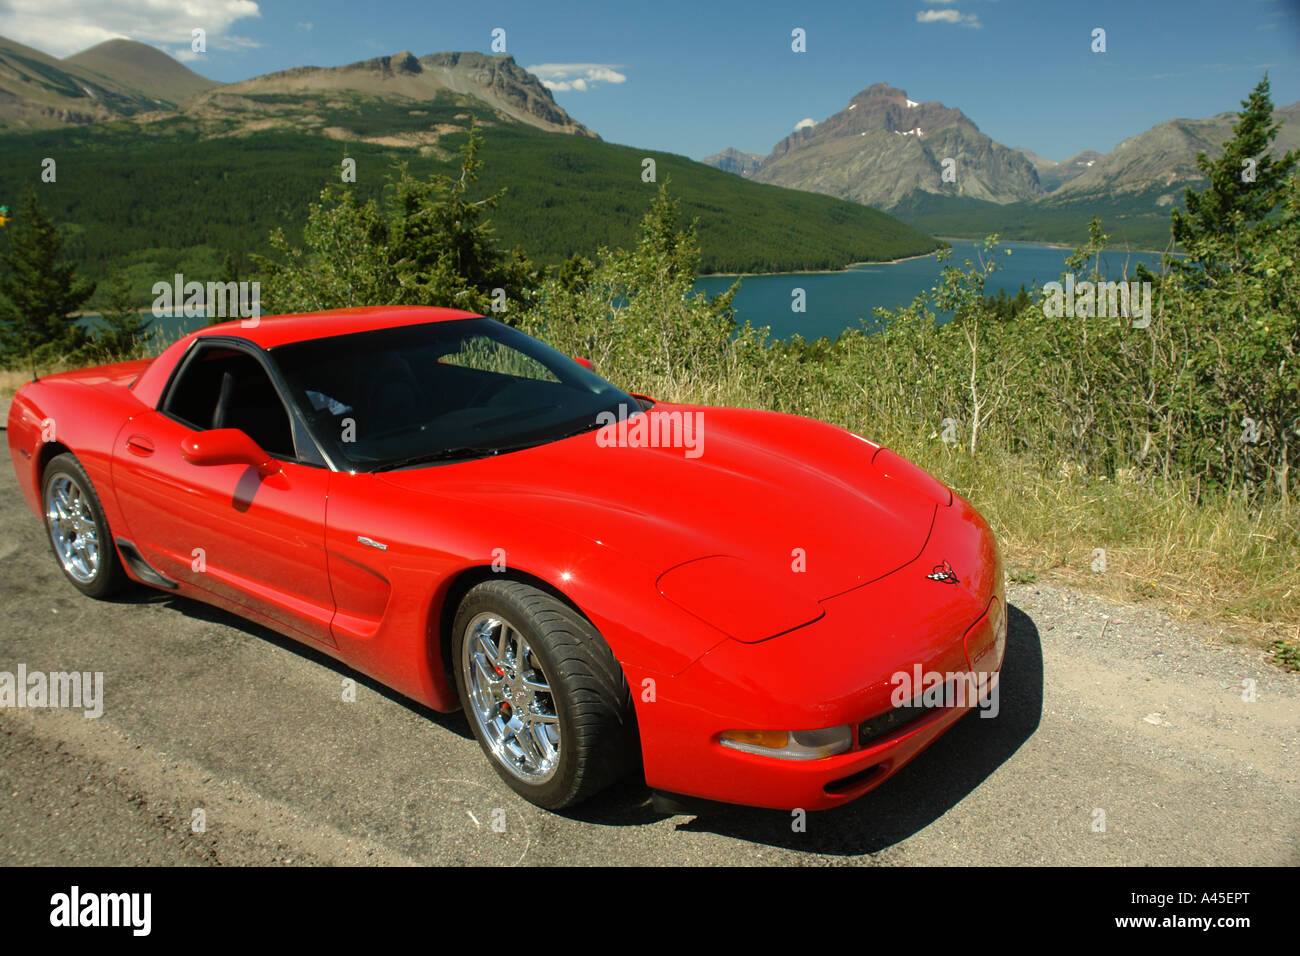 AJD56802, il Parco Nazionale di Glacier, MT, Montana, montagne rocciose, due in basso Lago di medicina, si affacciano, rosso corvette Foto Stock